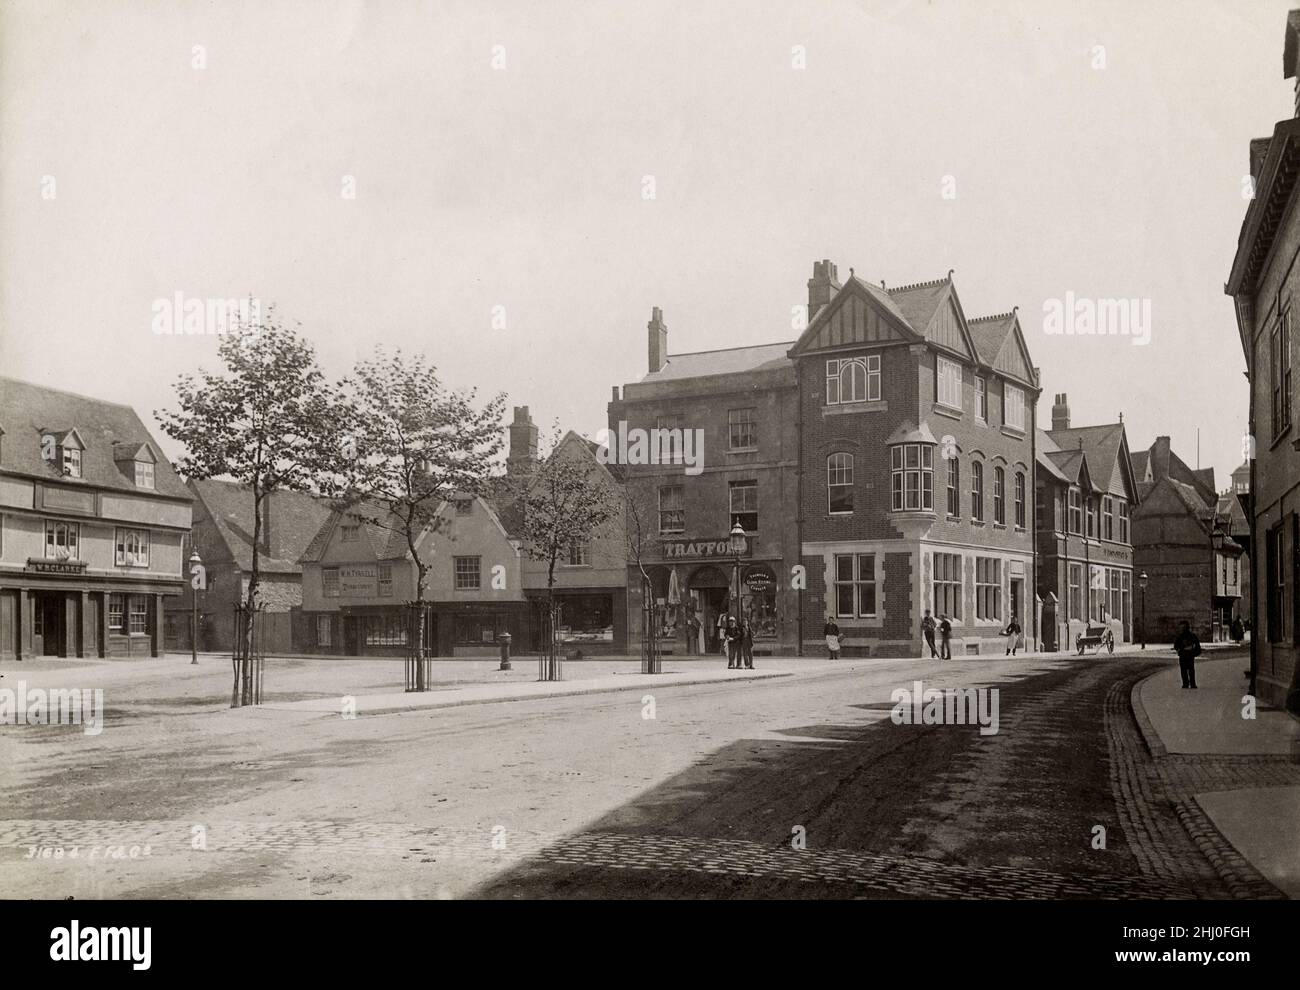 Photographie vintage, fin 19th, début 20th siècle, vue de 1893 - The Square, Abingdon, Oxfordshire Banque D'Images